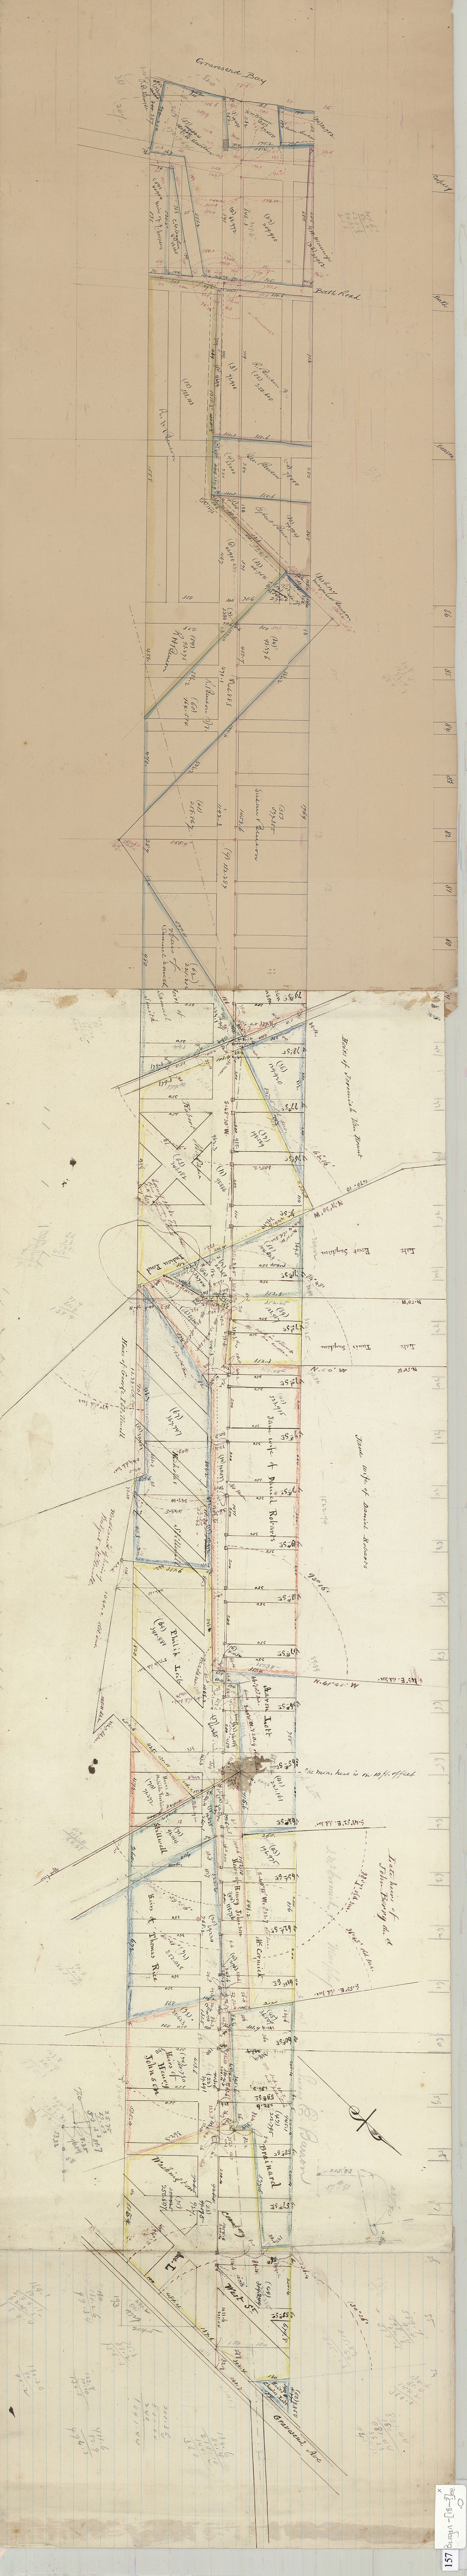 1804 NY MAP Brooklyn Conesus Rye Beach Cazenovia Binghamton Wampsville Ravenna 